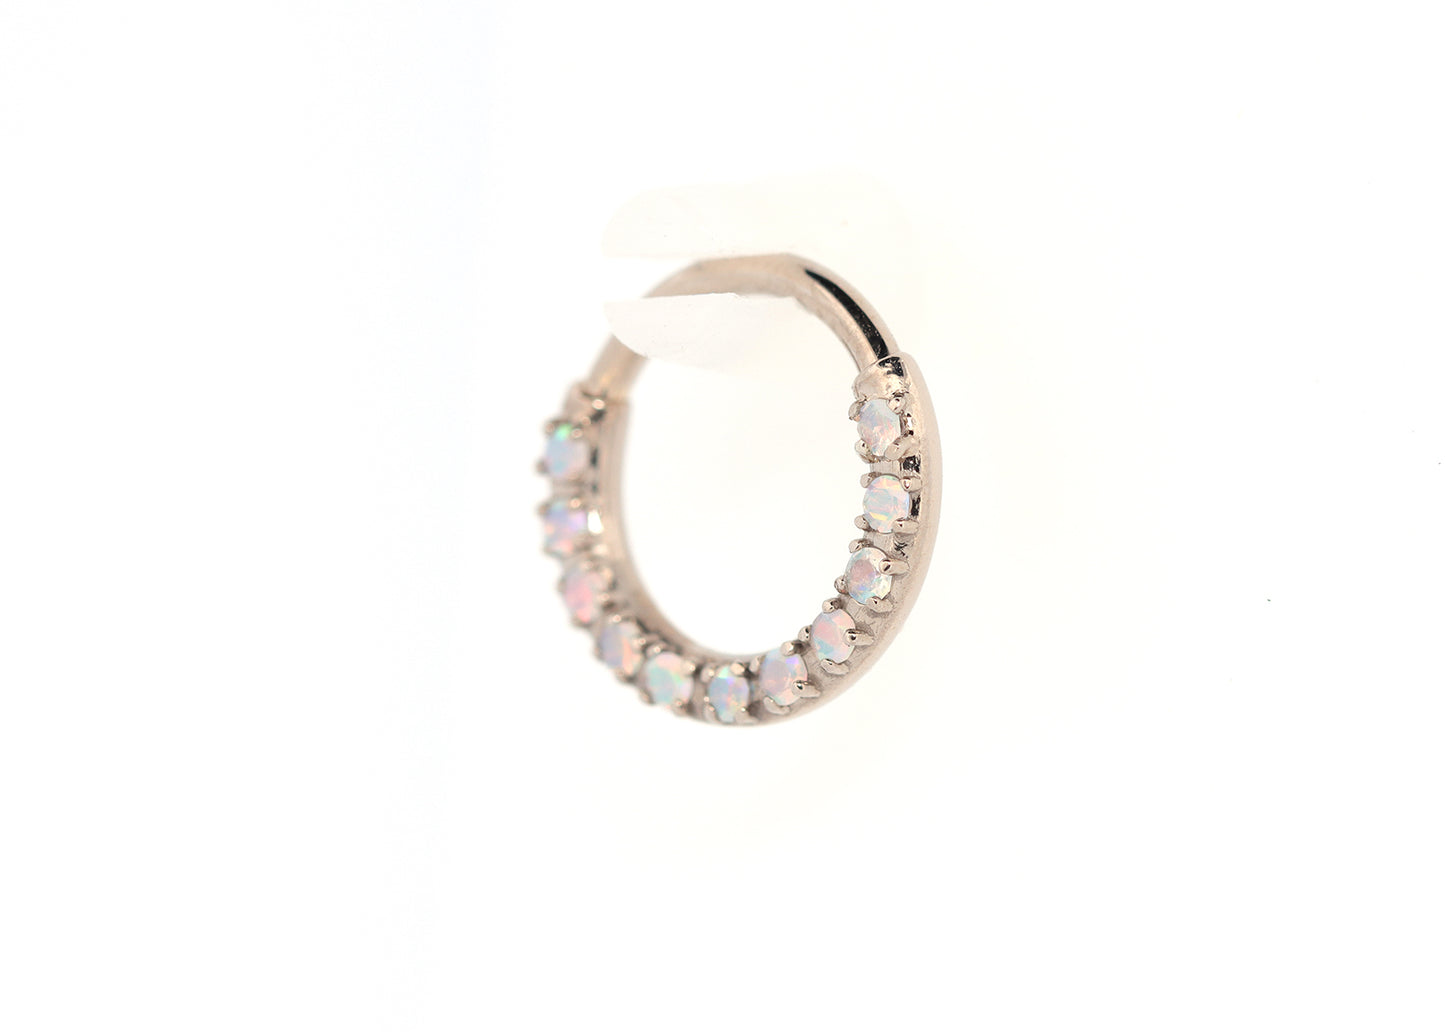 16g 11 Stone Prong Set White Opals Seam Ring